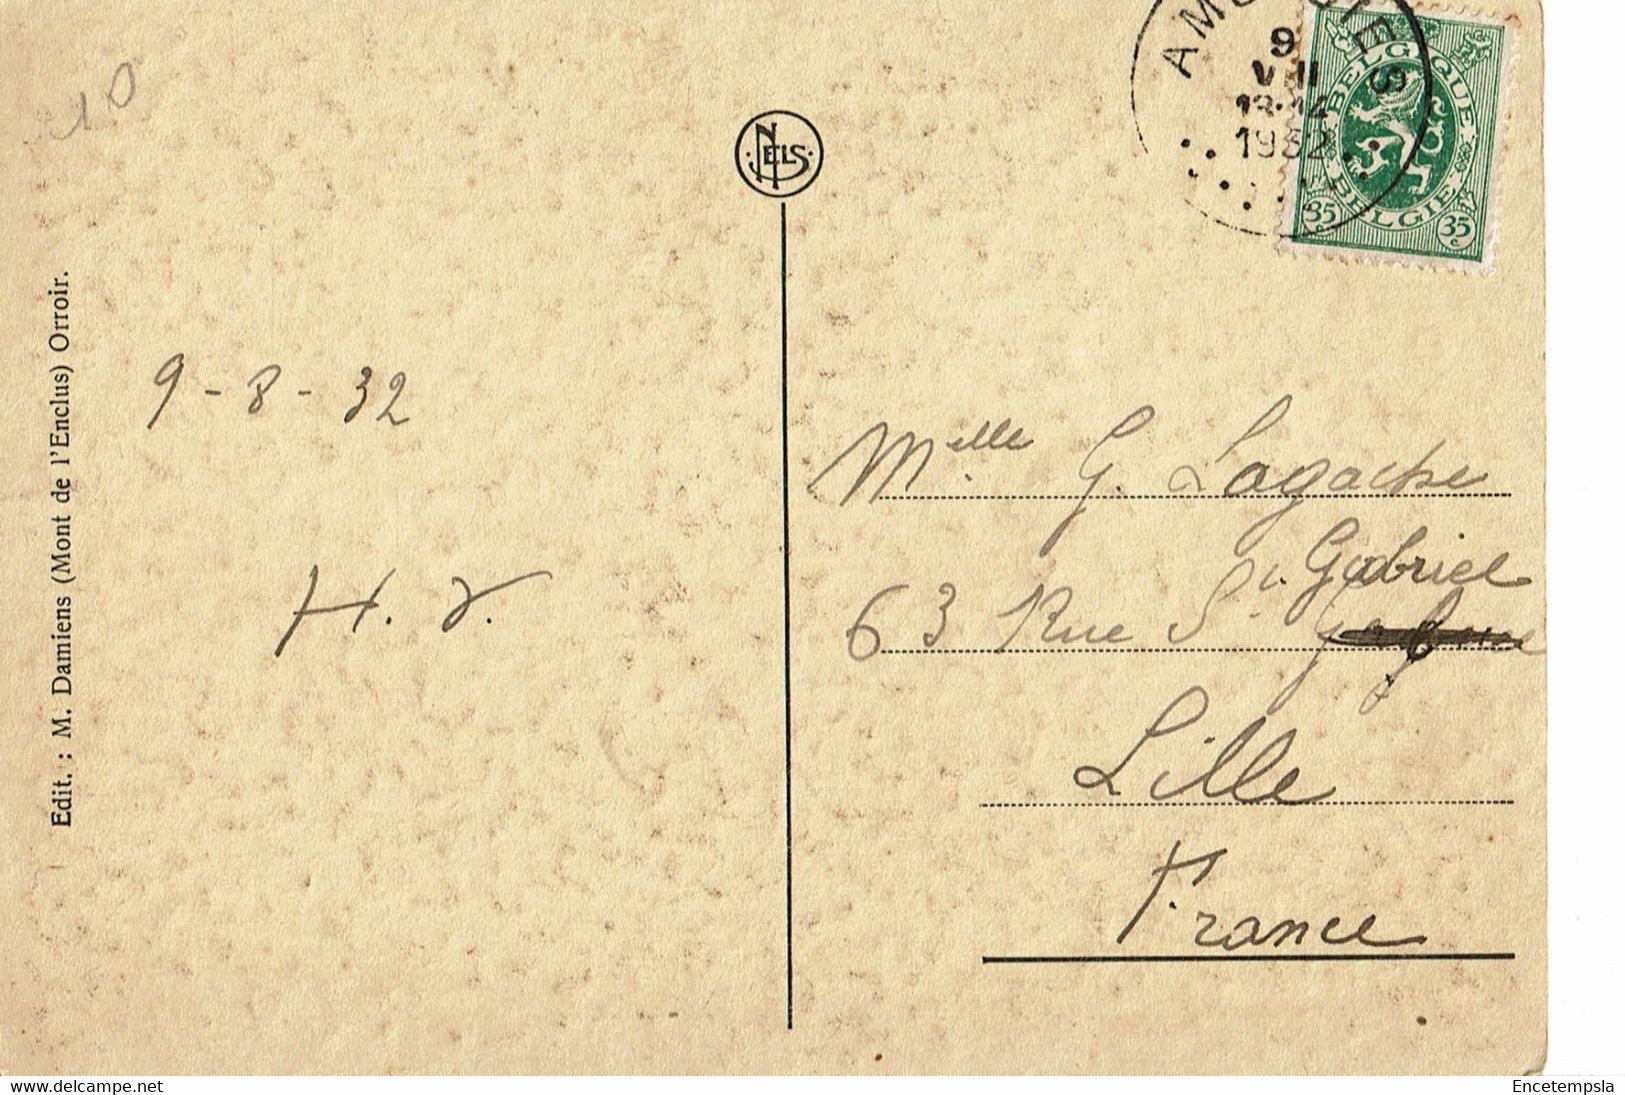 CPA-Carte Postale Belgique-Mont De L'Enclus Coin Du Renard -1932   VM29218 - Celles